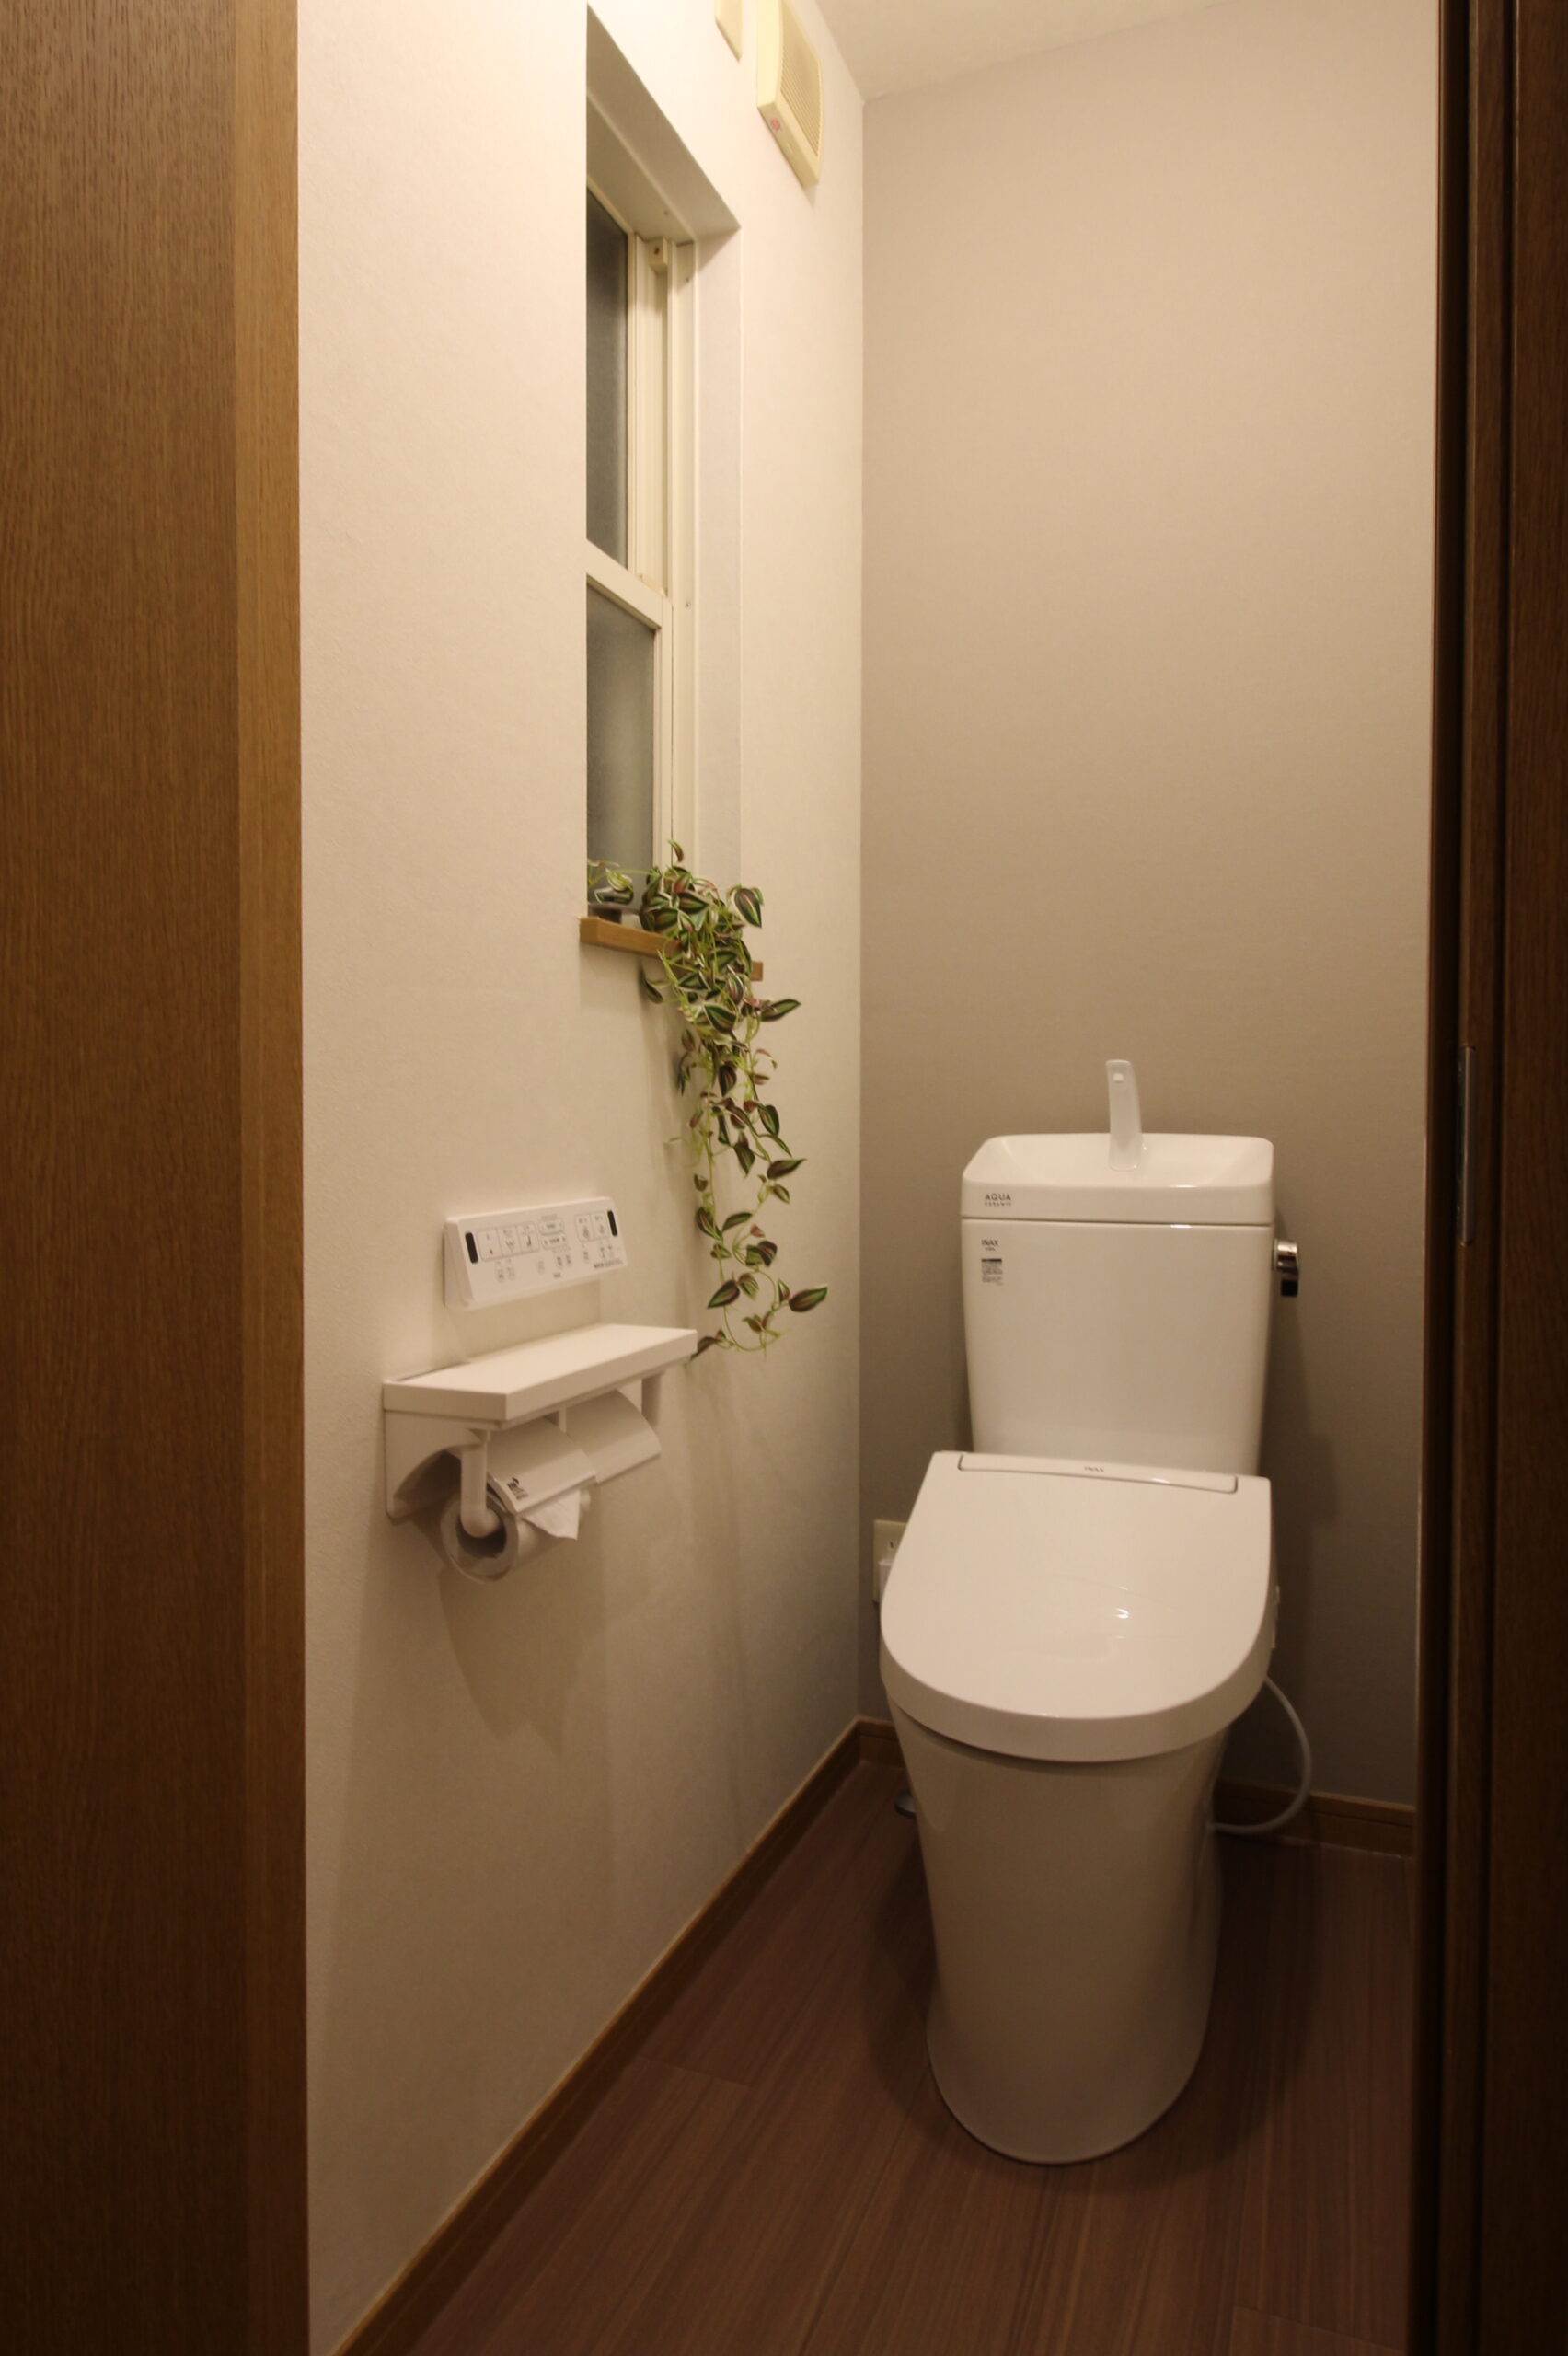 リクシルのアメージュ便器にリフォームしたトイレ。ナチュラルなアクセントクロスで、シンプルながらおしゃれなトイレ空間。